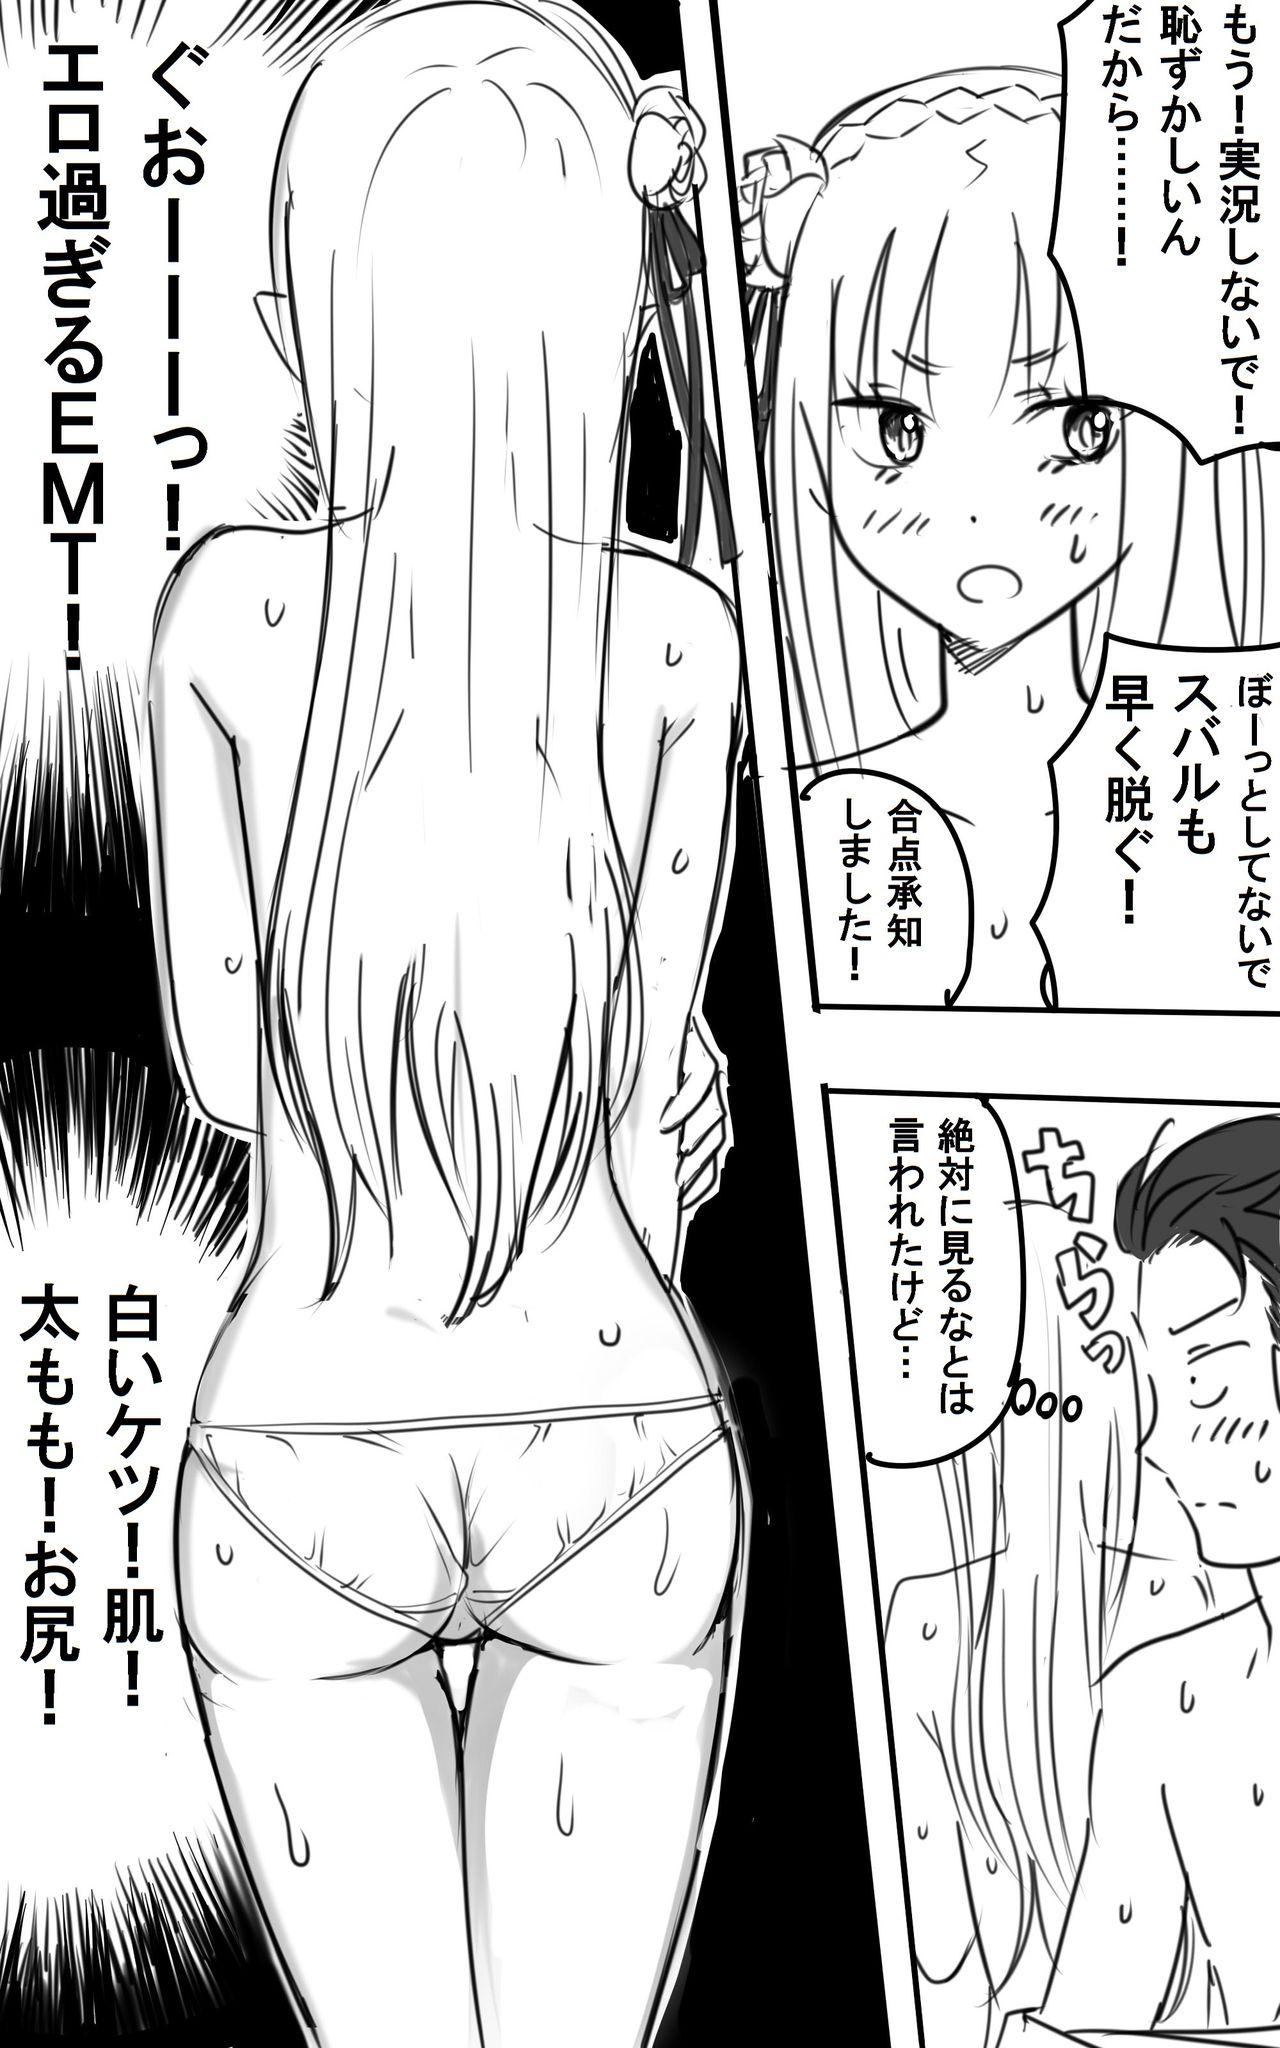 Clip [NIJI-TERU] Emilia-tan to Sugooku Sex Sono 1-10 (Re:Zero kara Hajimeru Isekai Seikatsu) - Re zero kara hajimeru isekai seikatsu Camshow - Page 7